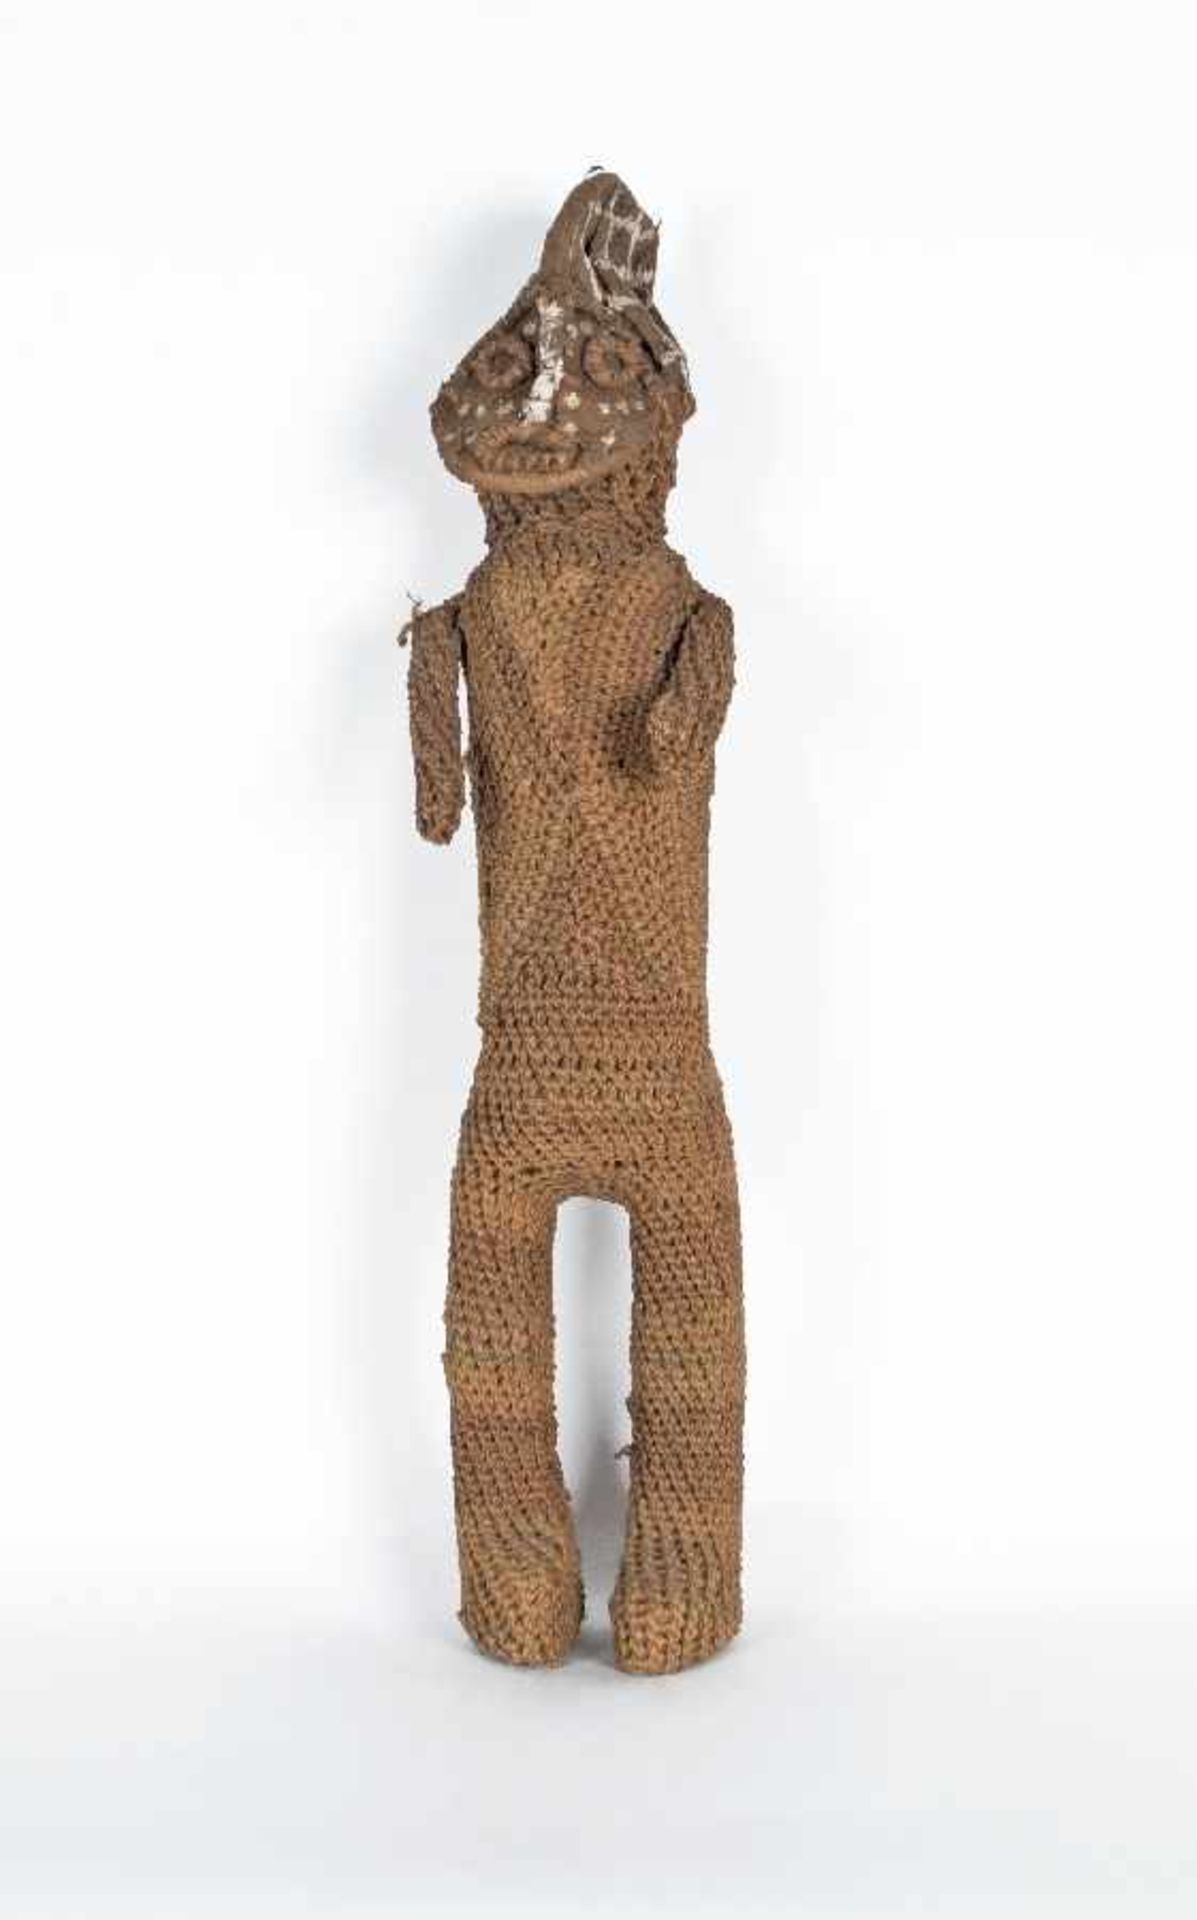 Afrika Idolpuppe Holzkorpus mit textiler Umhüllung, z. T. farbig gefasst; H 68 cm; Sammlung Helmut